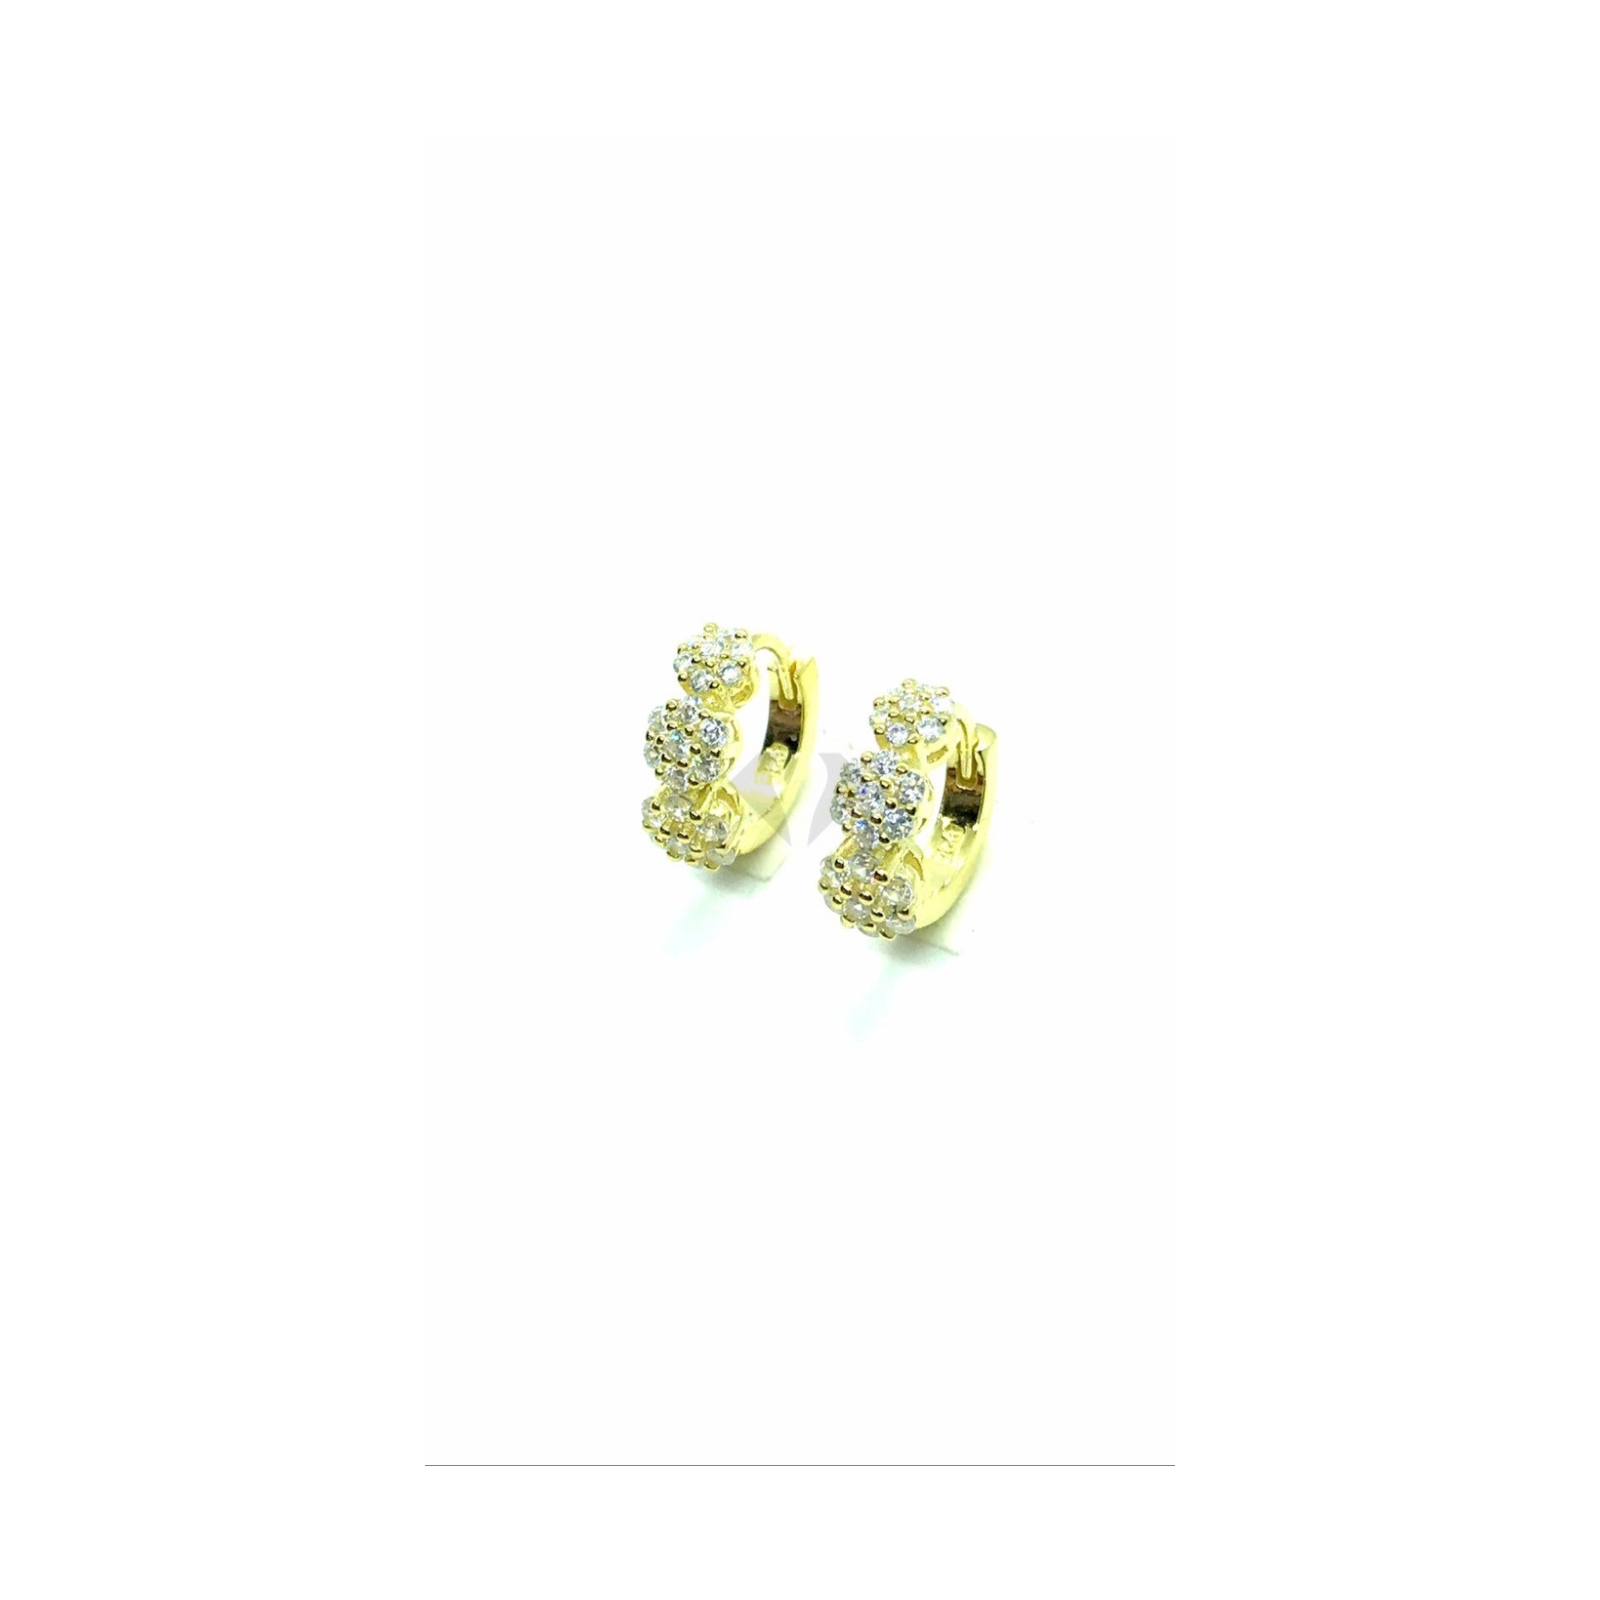 cerchietti fiore mm 13 in argento 925% (prezzo inteso per singolo orecchino) PLACCATO ORO